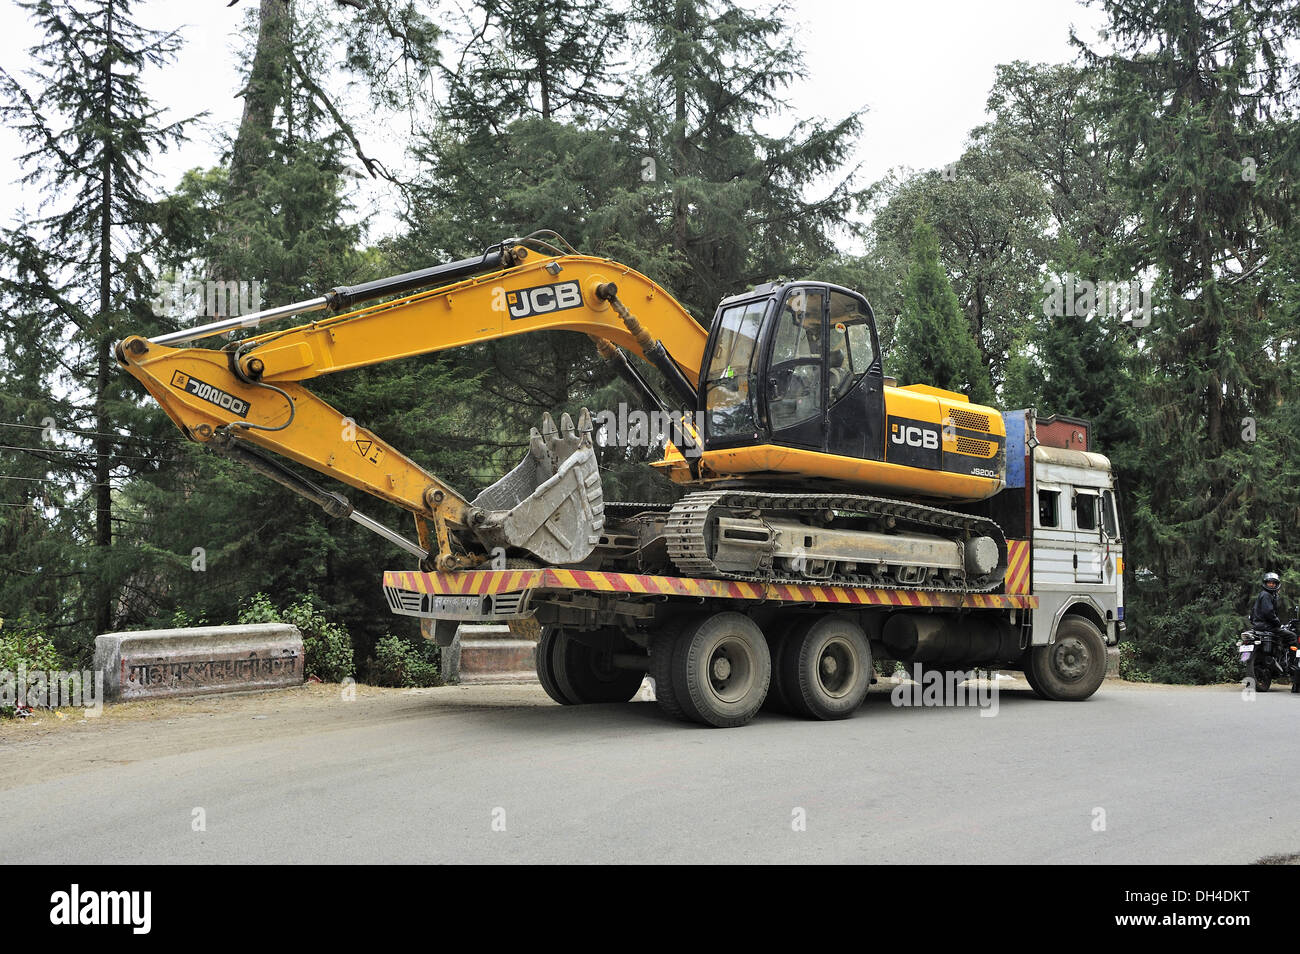 Truck carrying loaded with JCB crane Ranikhet Almora Uttarakhand India Asia Stock Photo